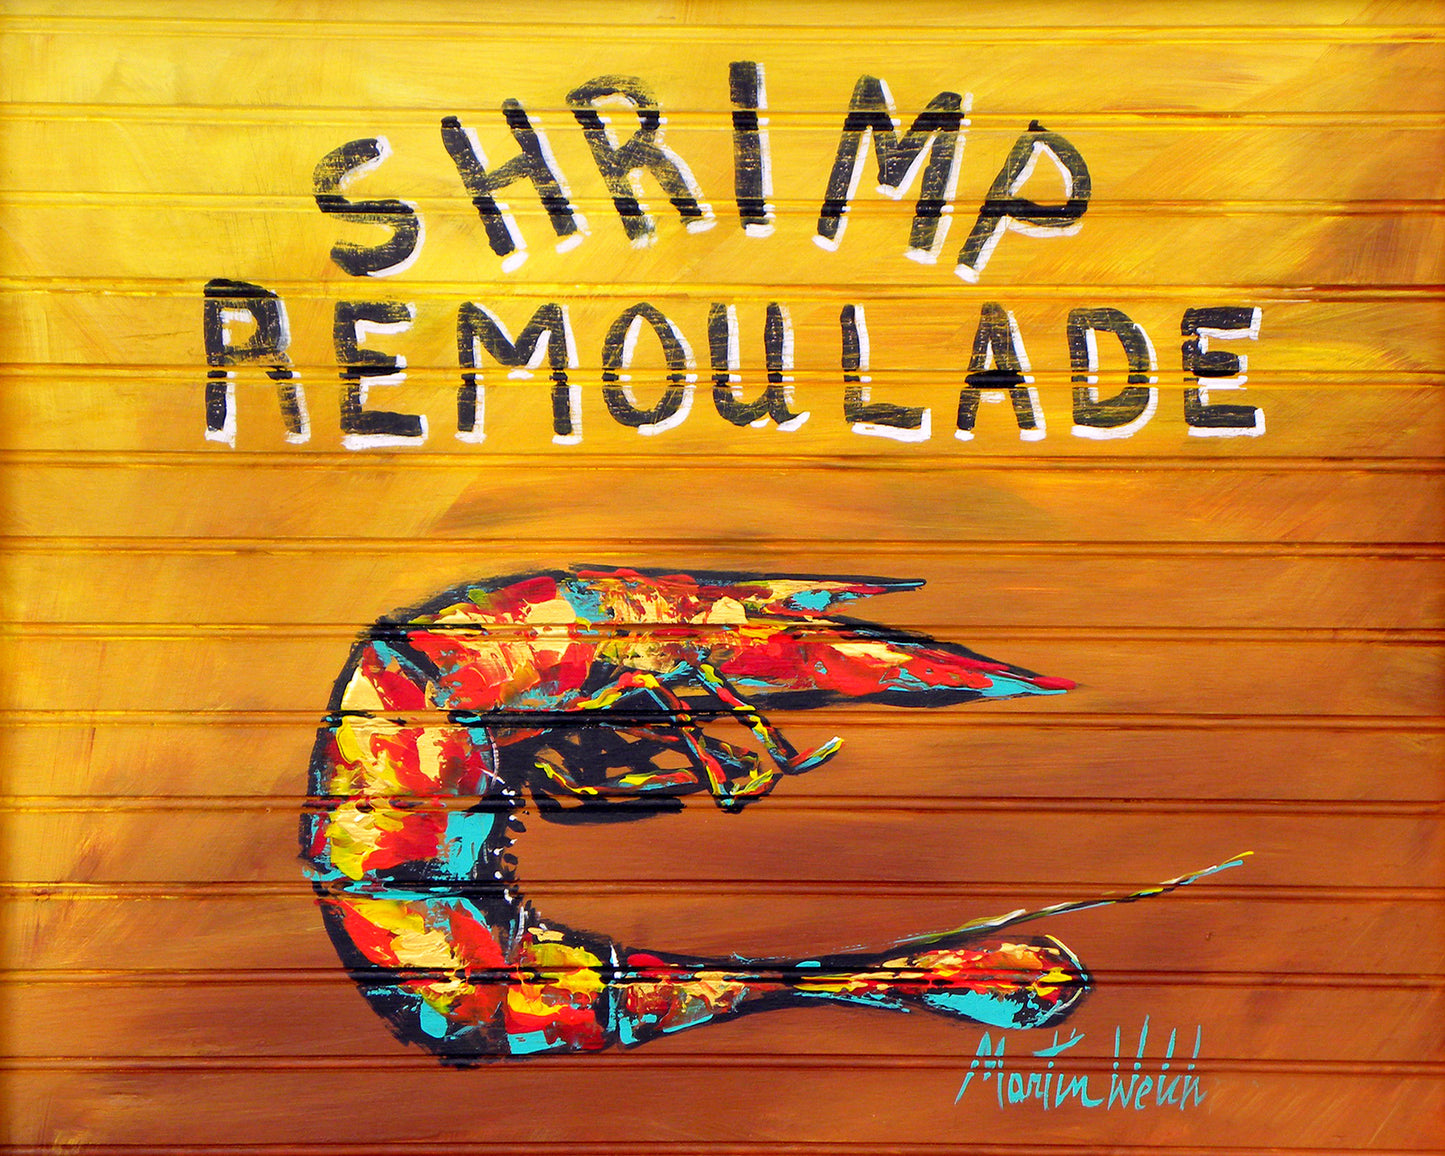 Shrimp Remoulade - Shrimp - 11"x14" Print